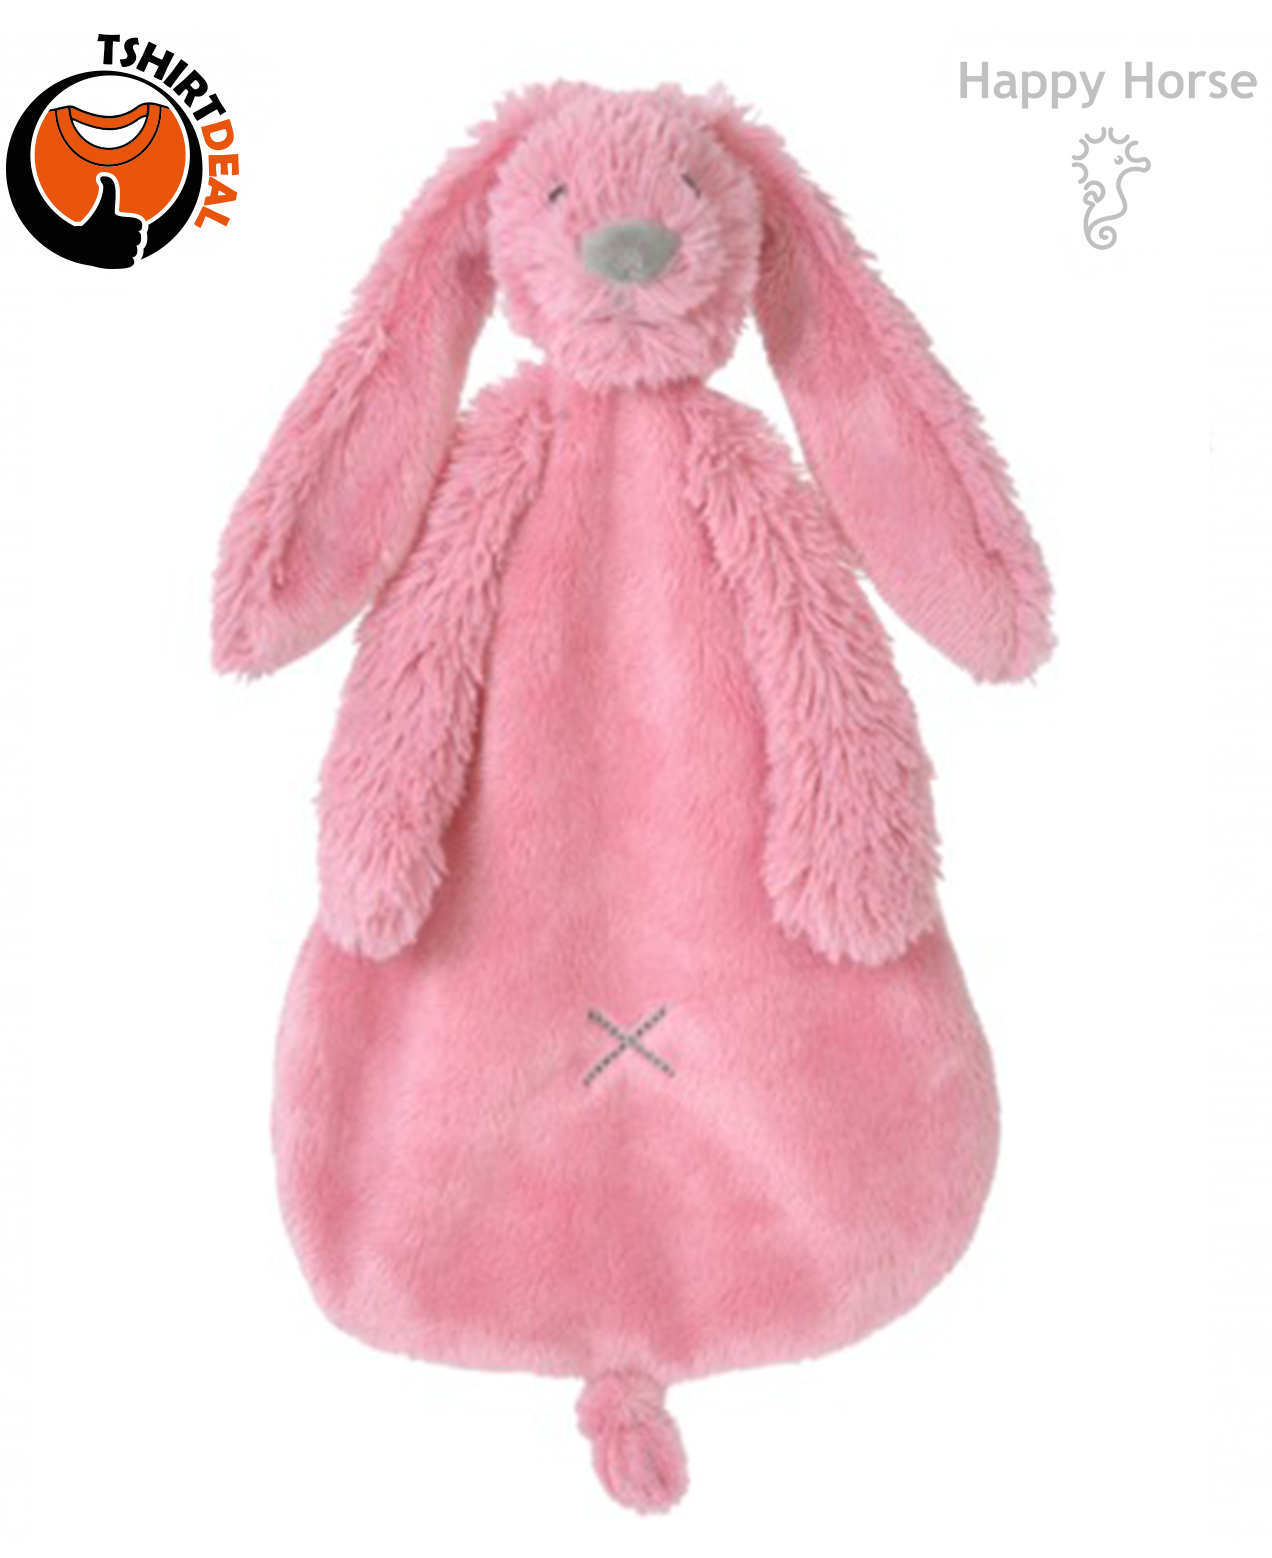 https://www.giftdeals.nl/happyhorse/deep-pink-rabbit-richie-knuffeldoekje-gratis-naam-geborduurd.html